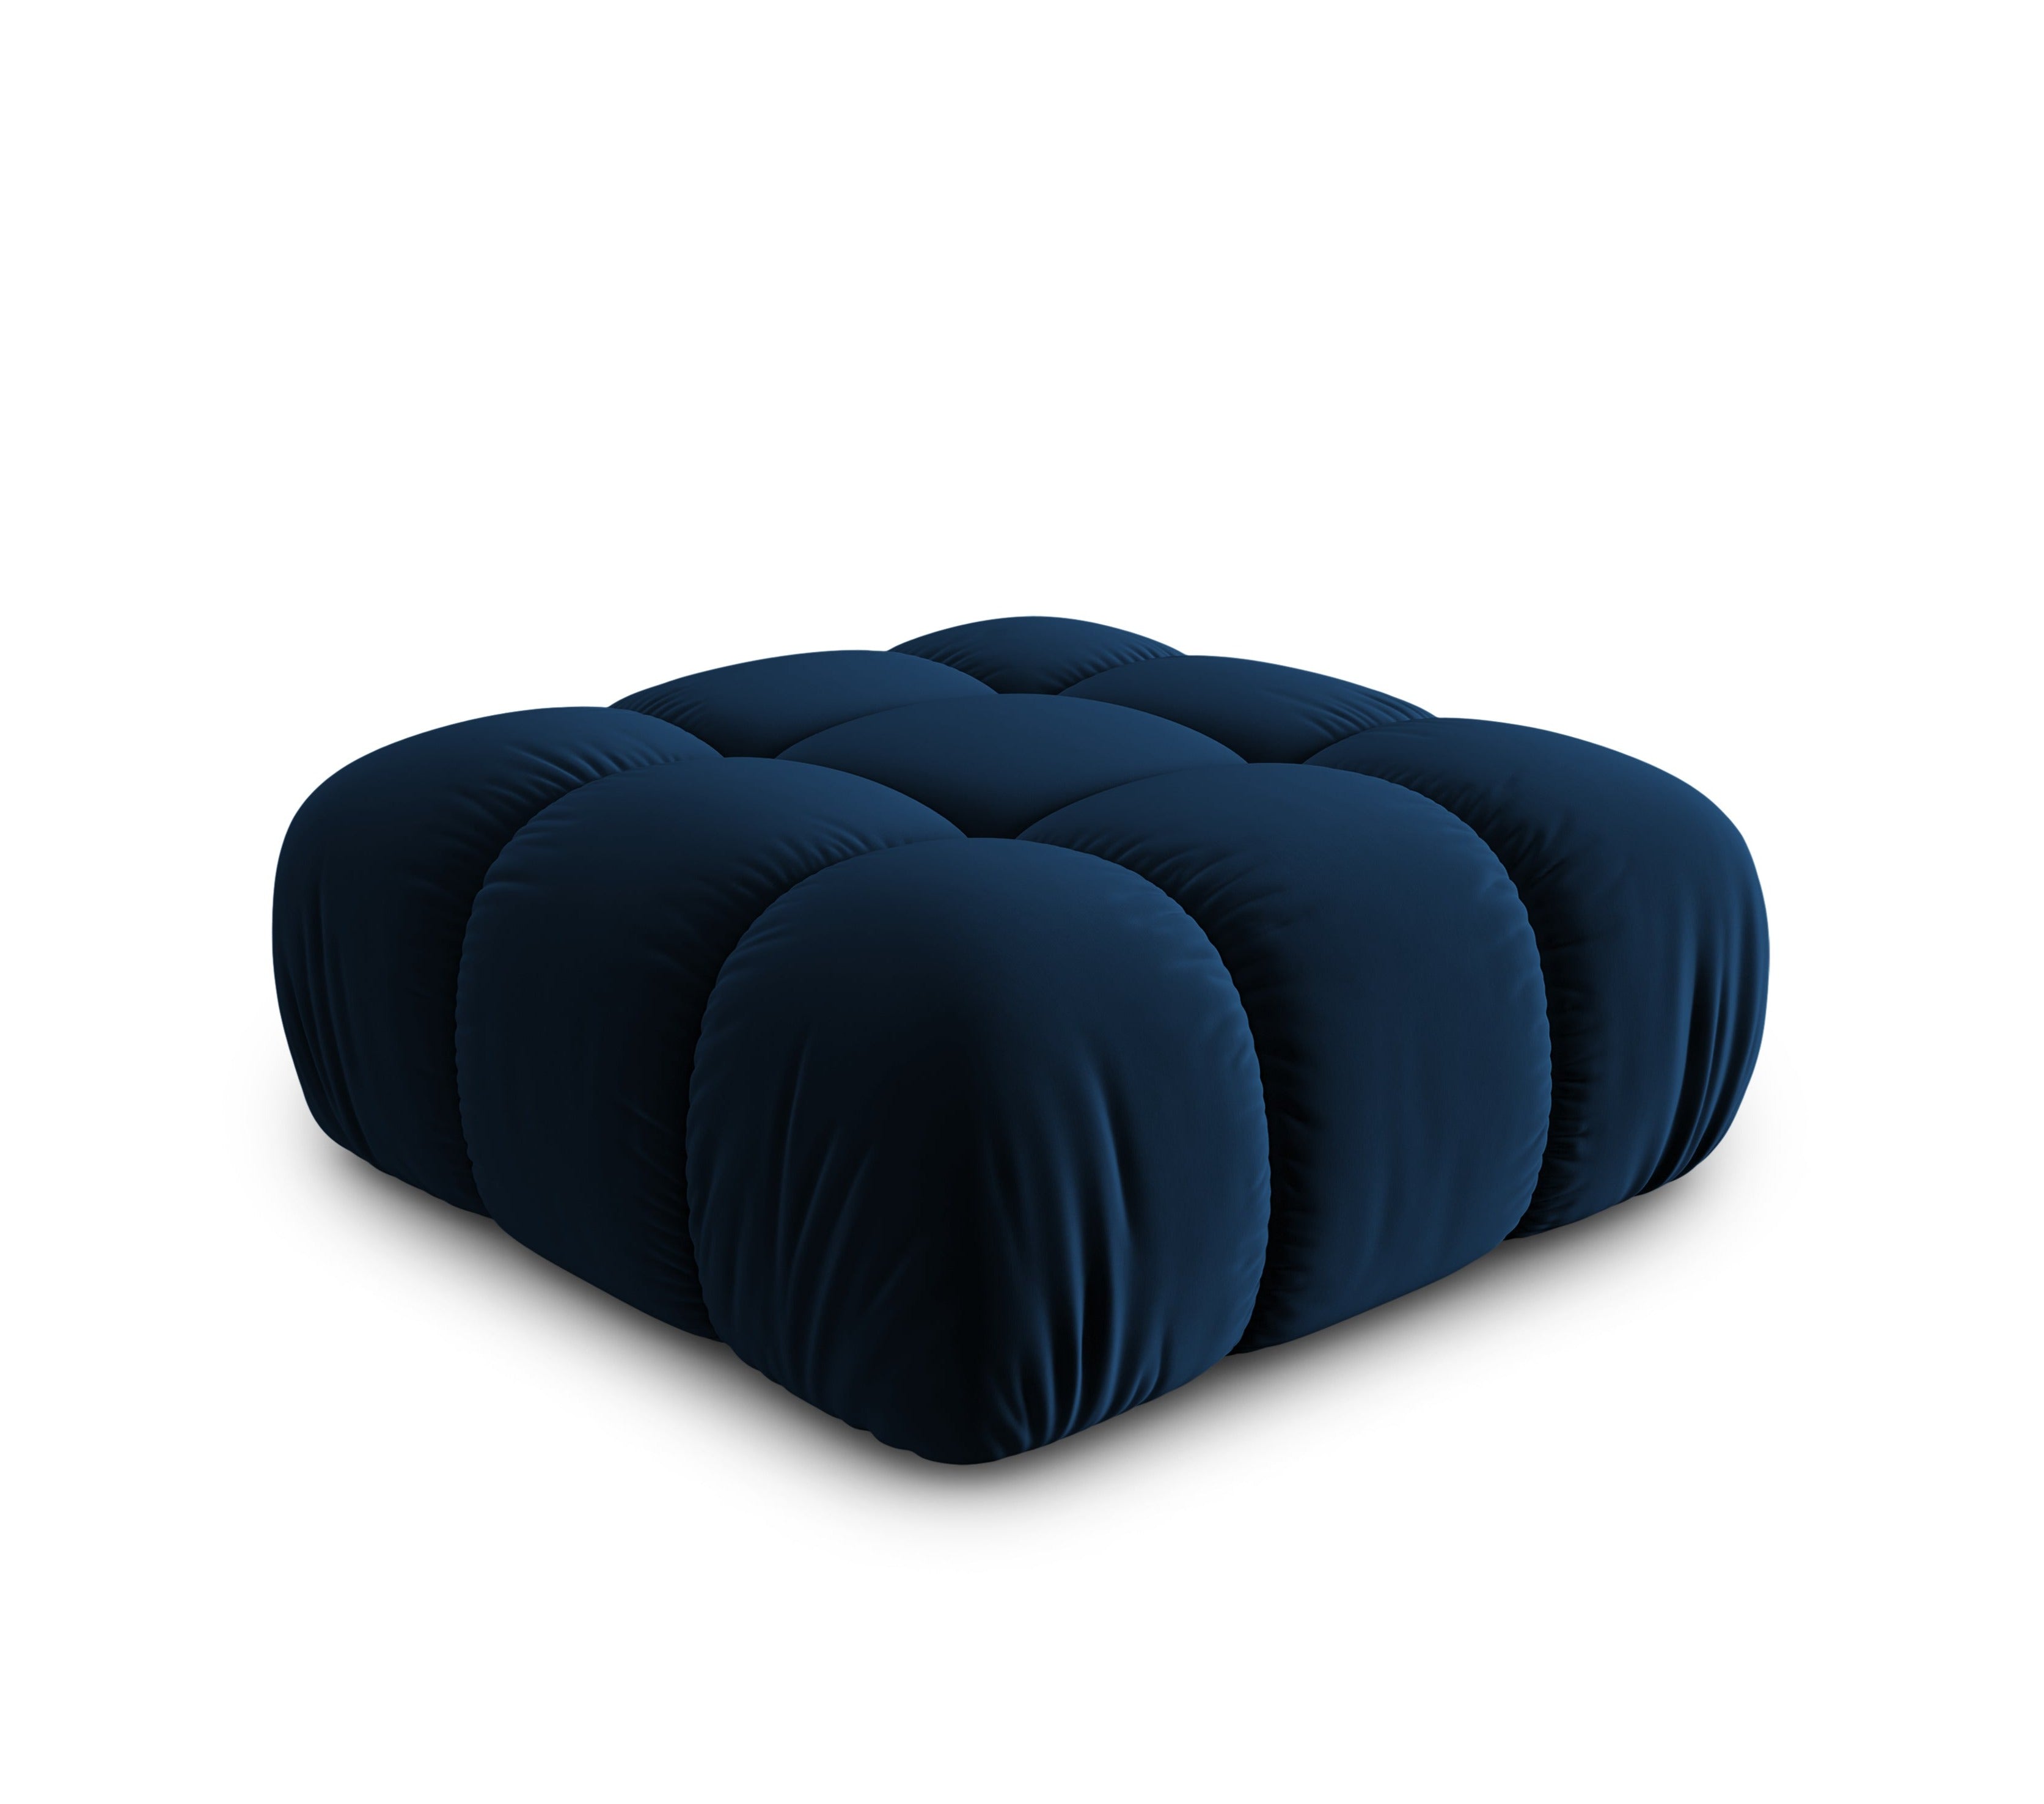 Velvet Pouf, "Bellis", 1 Seat, Royal Blue, 94x94x39
Made in Europe, Micadoni, Eye on Design